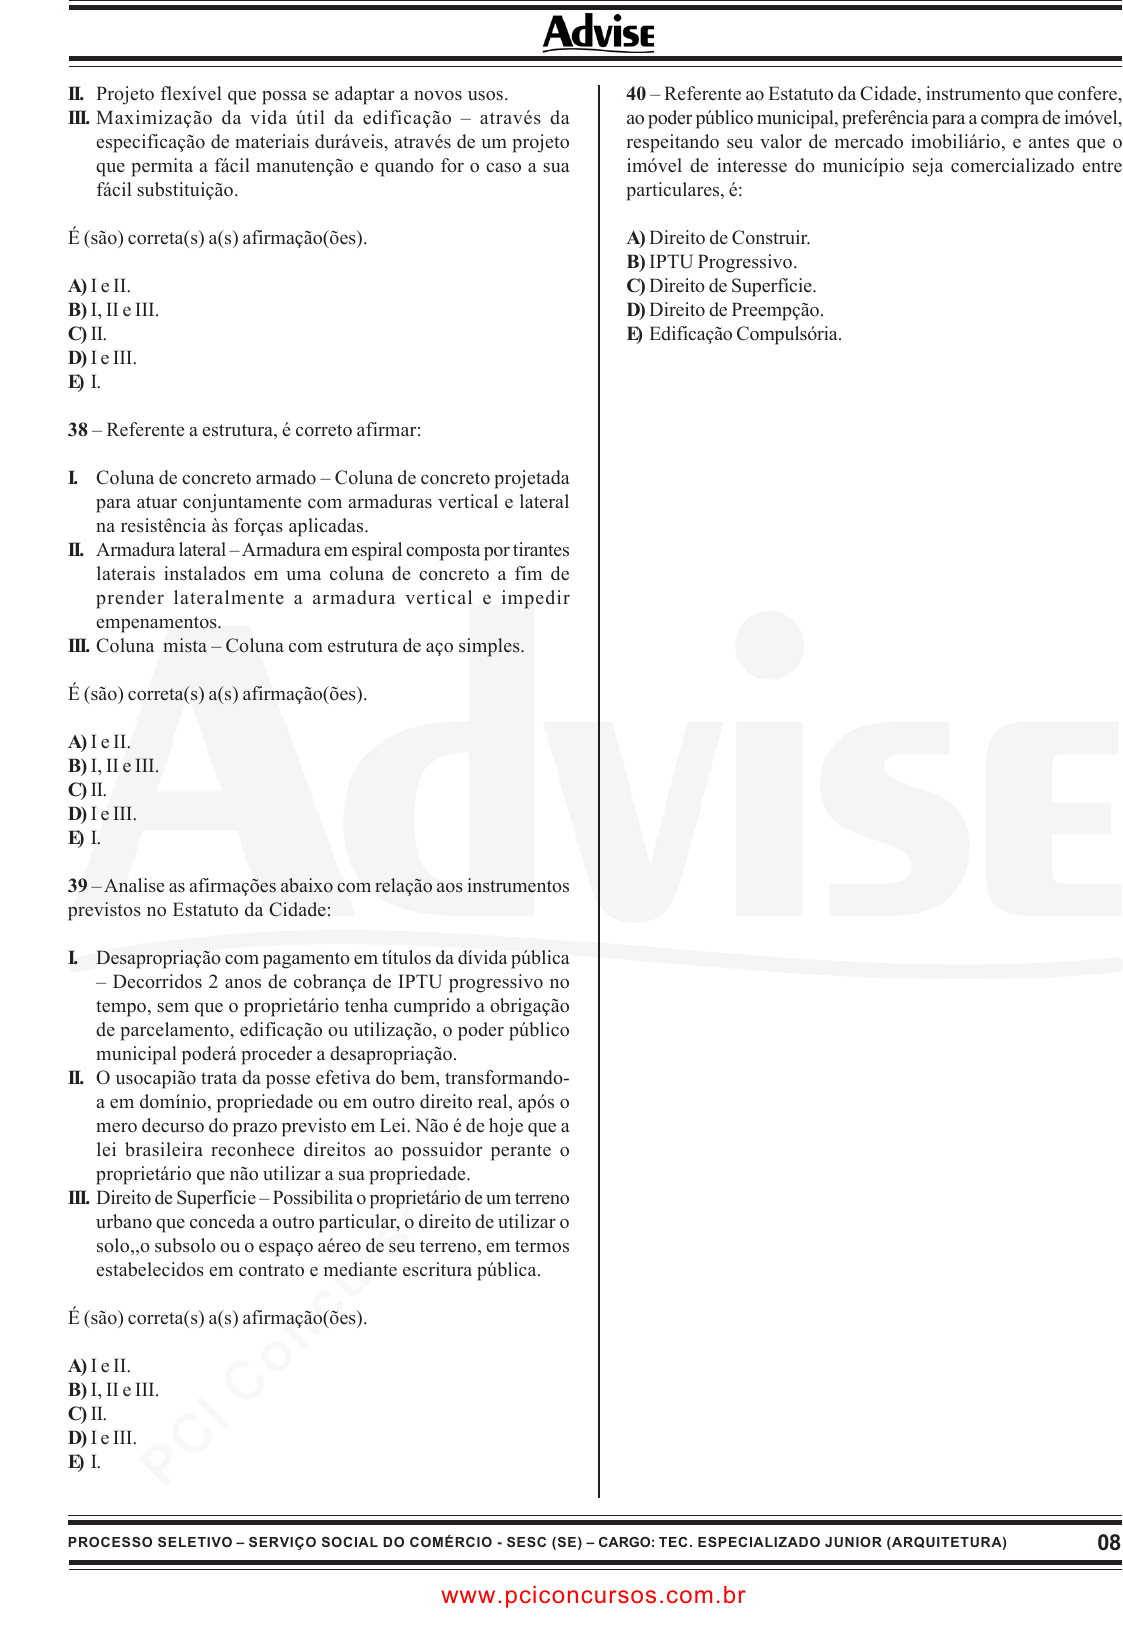 Prova SESCSE - ADVISE - 2010 - para Artífice de Manutenção - Pedreiro.pdf -  Provas de Concursos Públicos